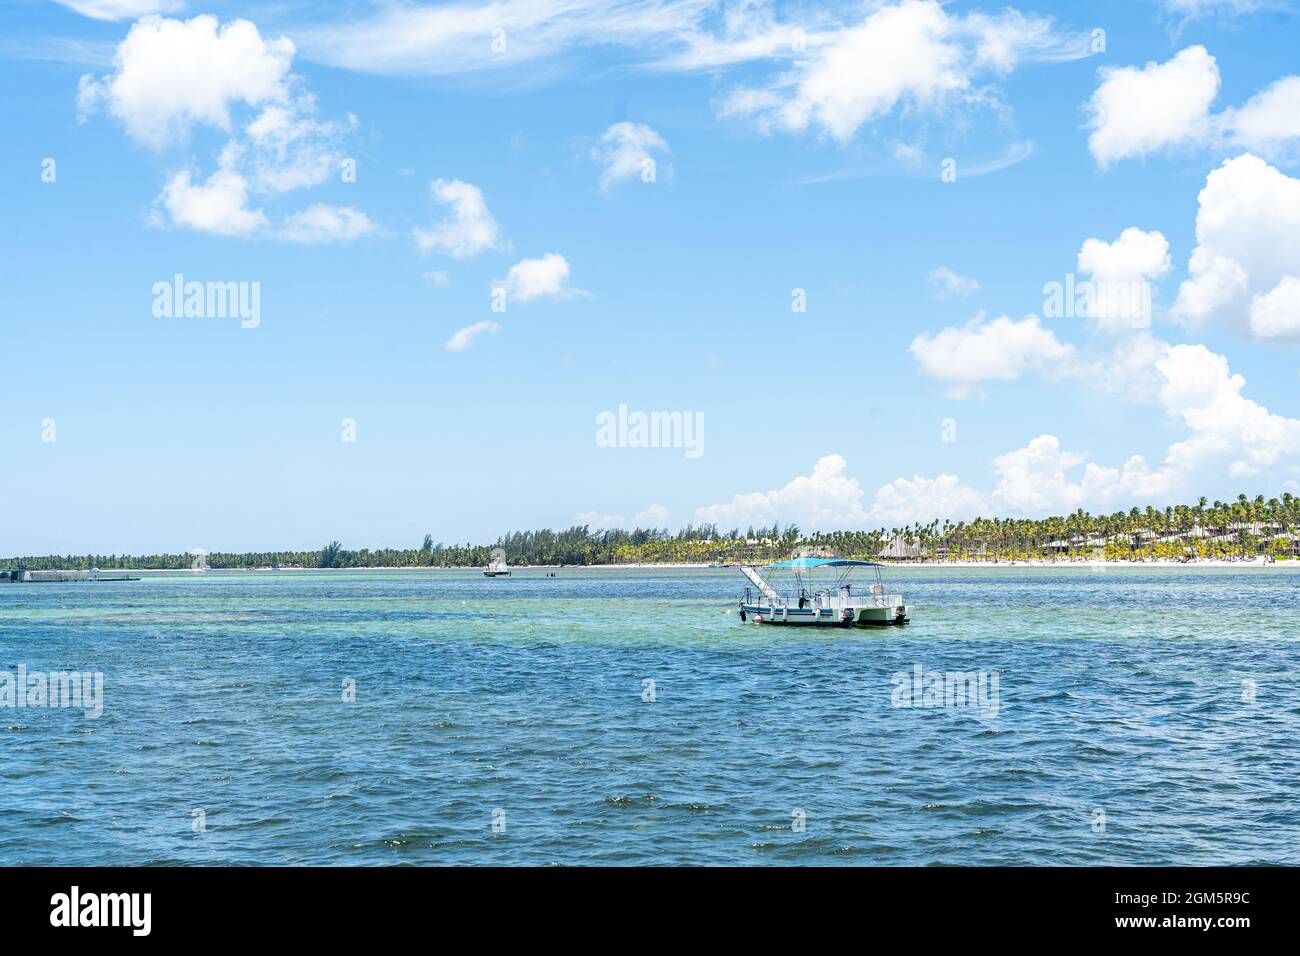 Bootsfahrten auf dem Picture Perfect Beach der Dominikanischen Republik. Stockfoto